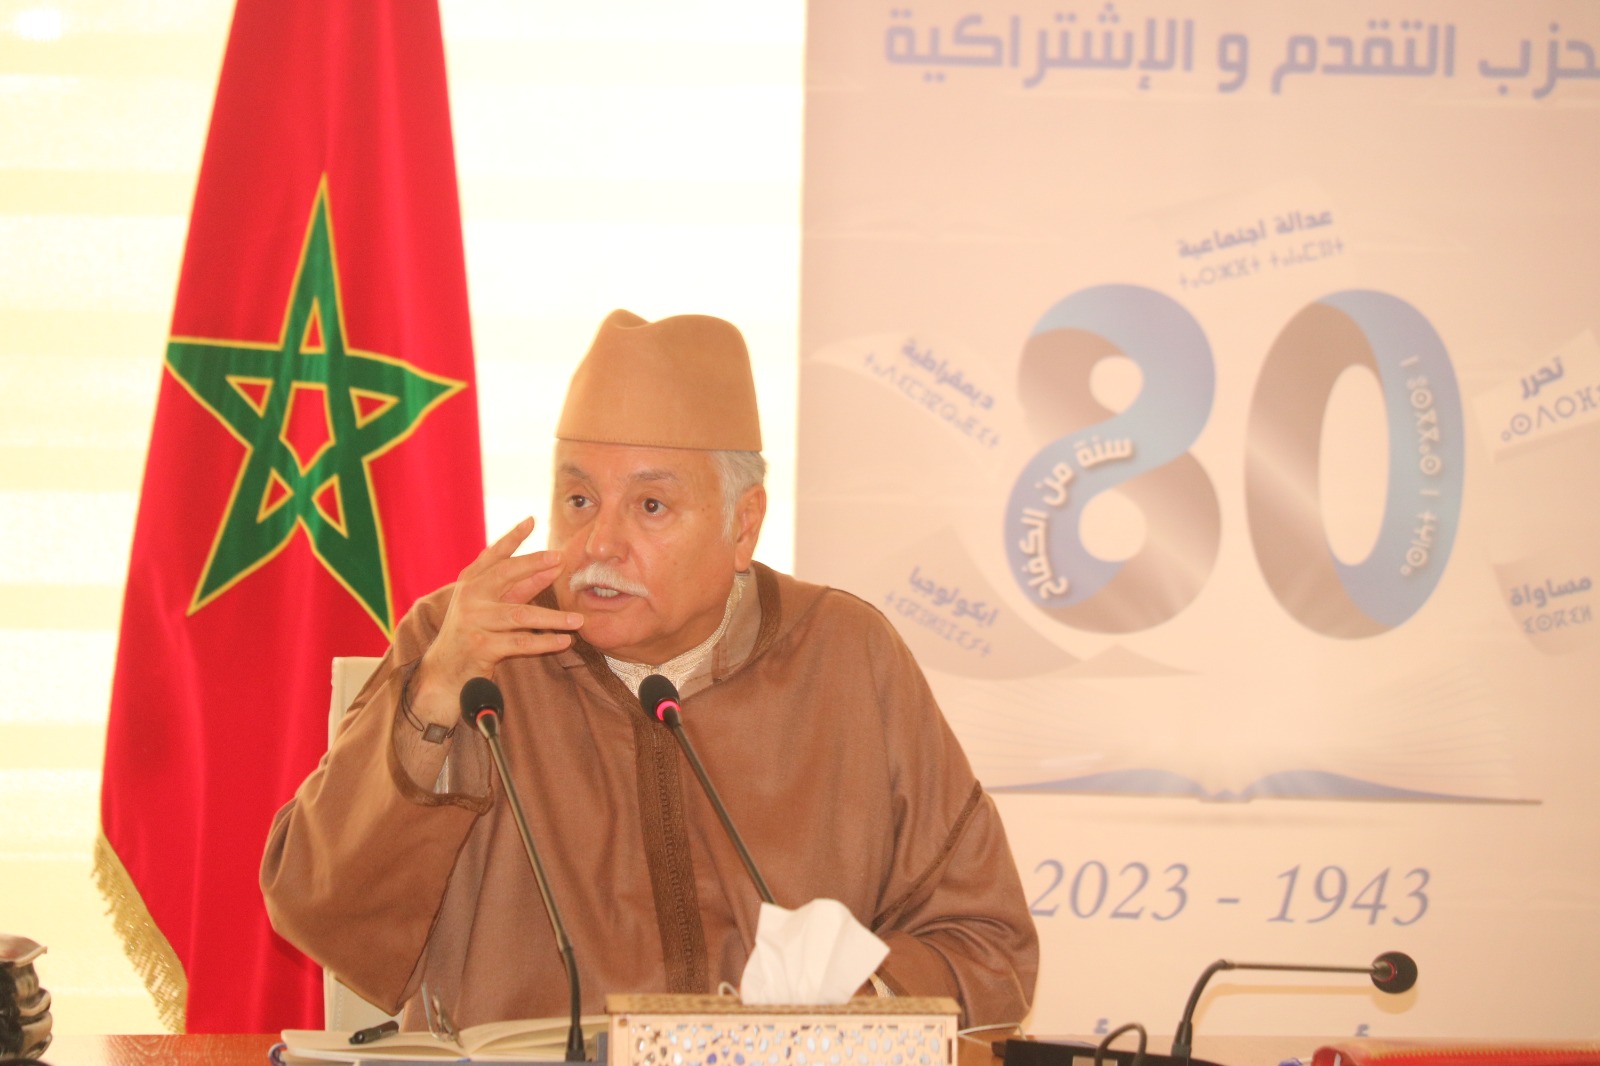 رفاق "بنعبد الله" يدعون الحكومة إلى دعم القدرة الشرائية للمغاربة